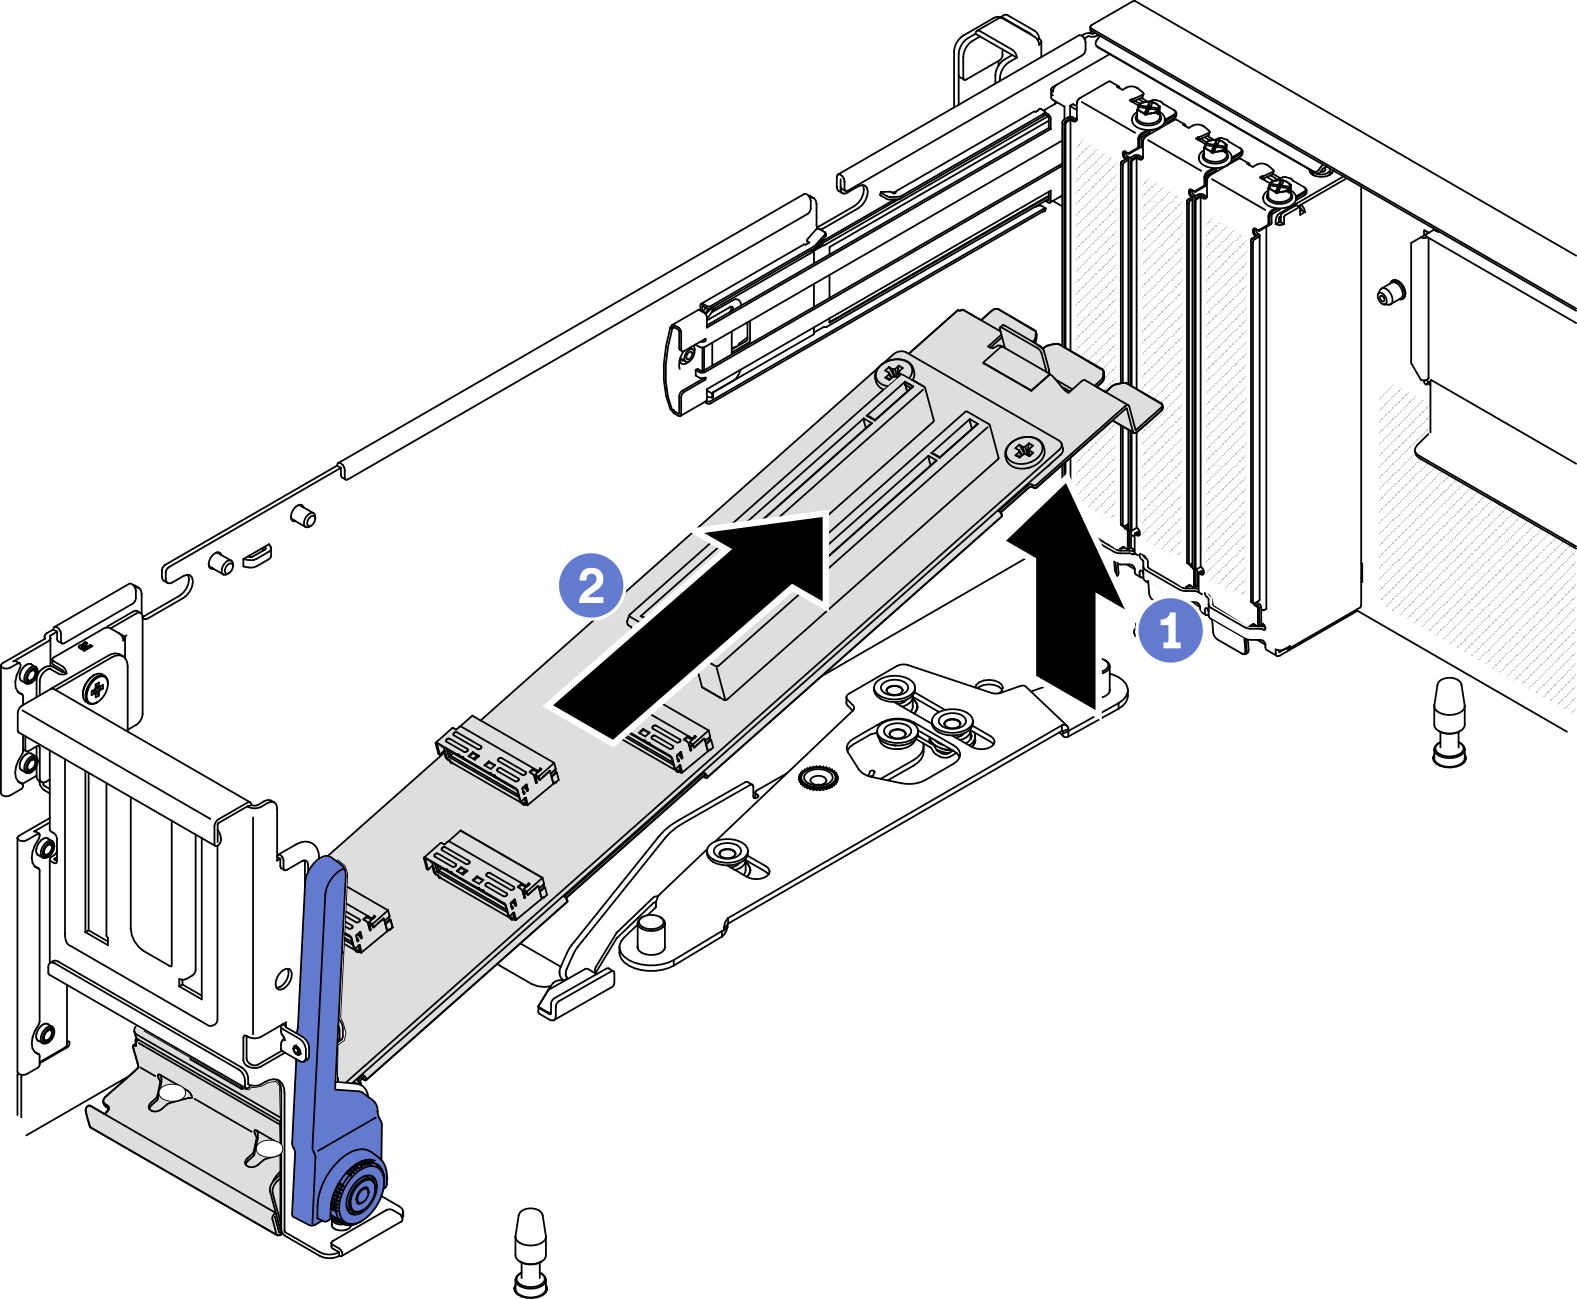 Removing the módulo de la placa de expansión de E/S frontal